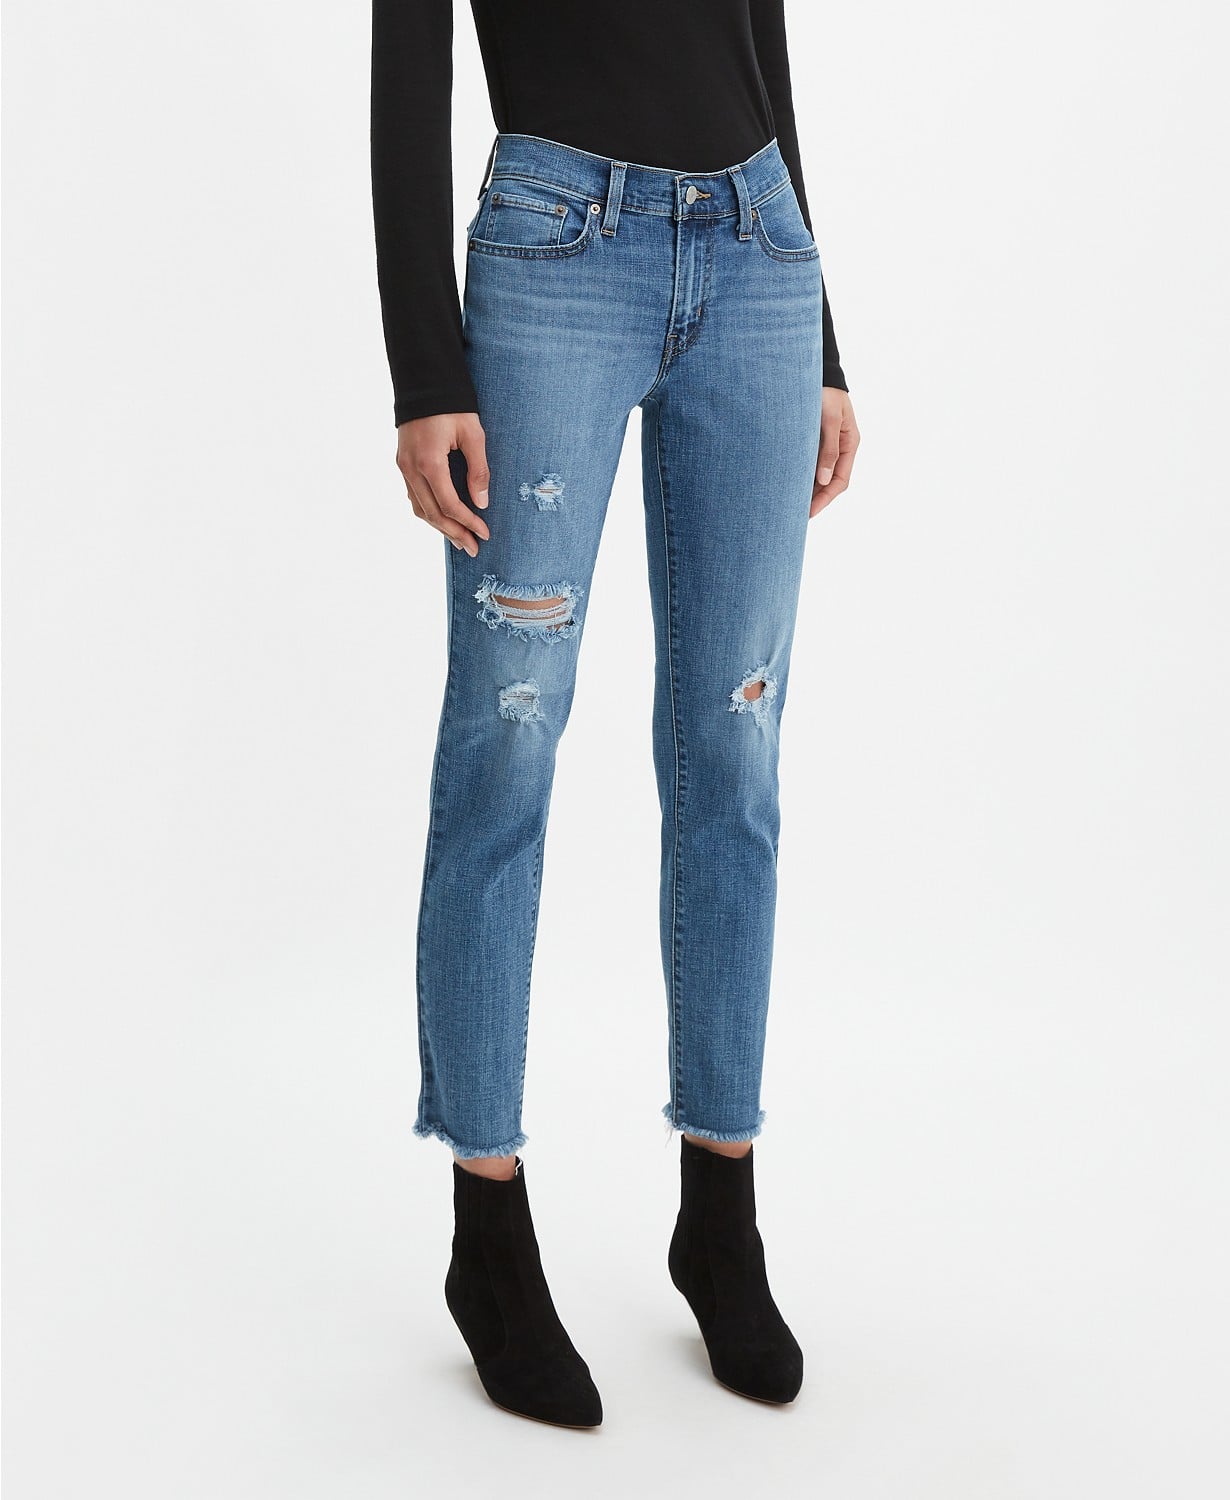 macy's levi's women's jeans